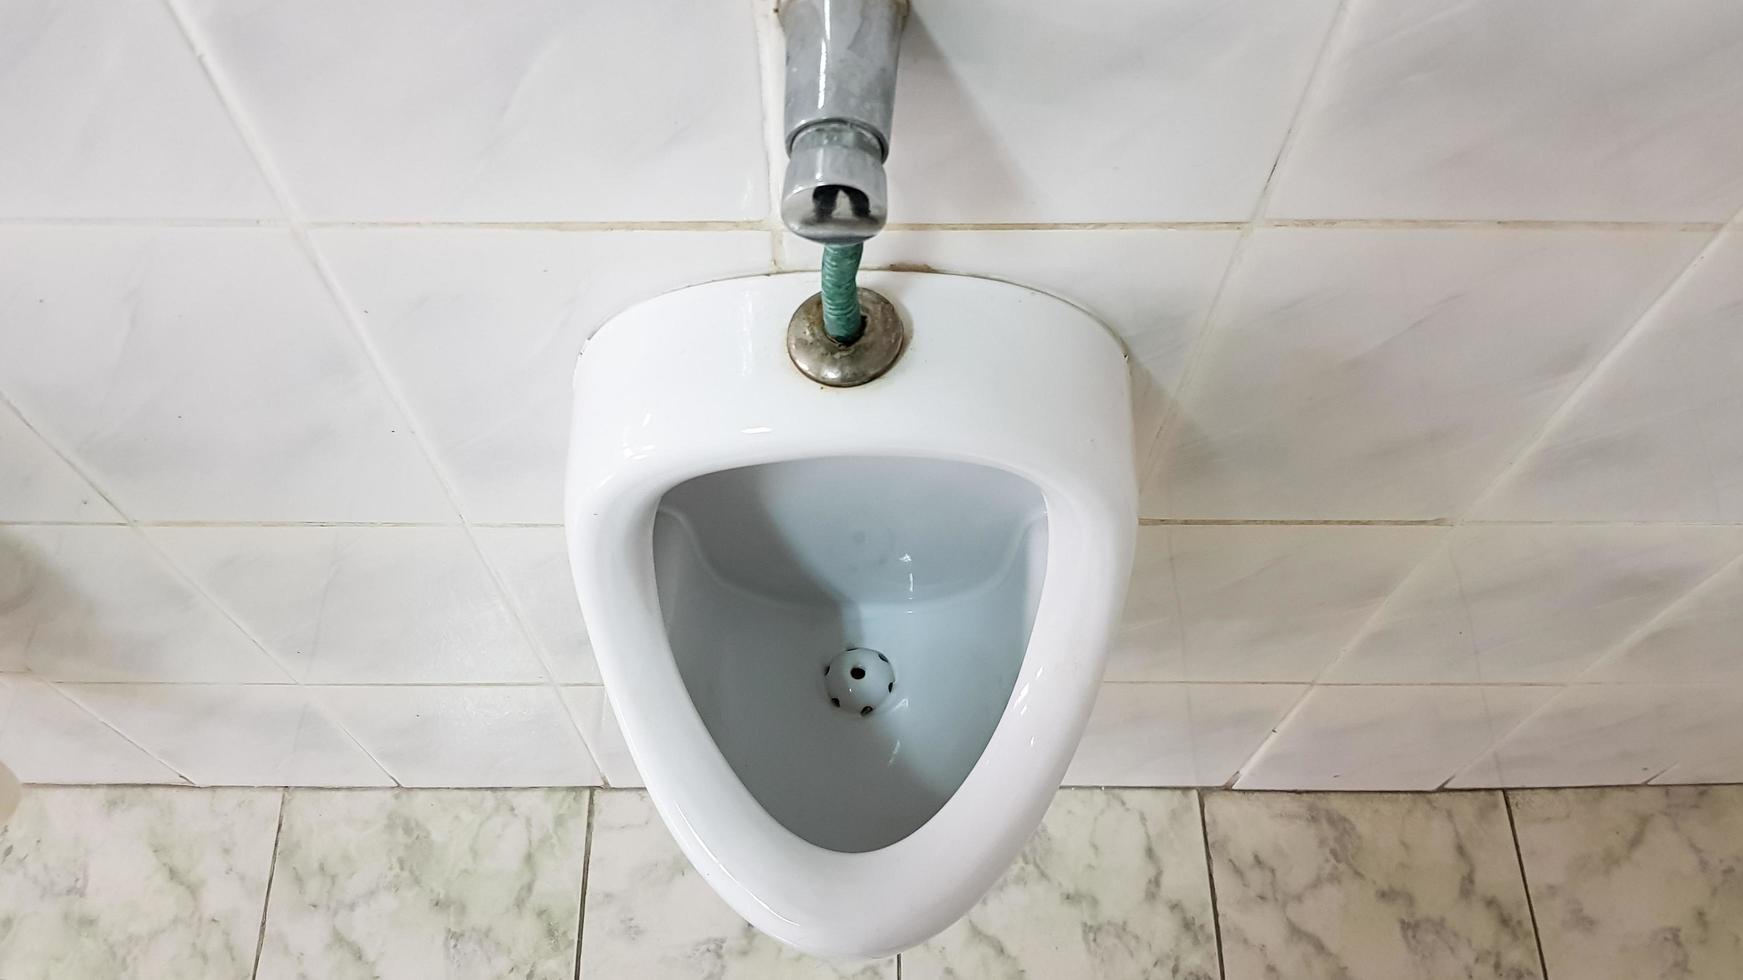 baño público con un urinario de cerámica. Los urinarios preparan cuencos para hombres. foto